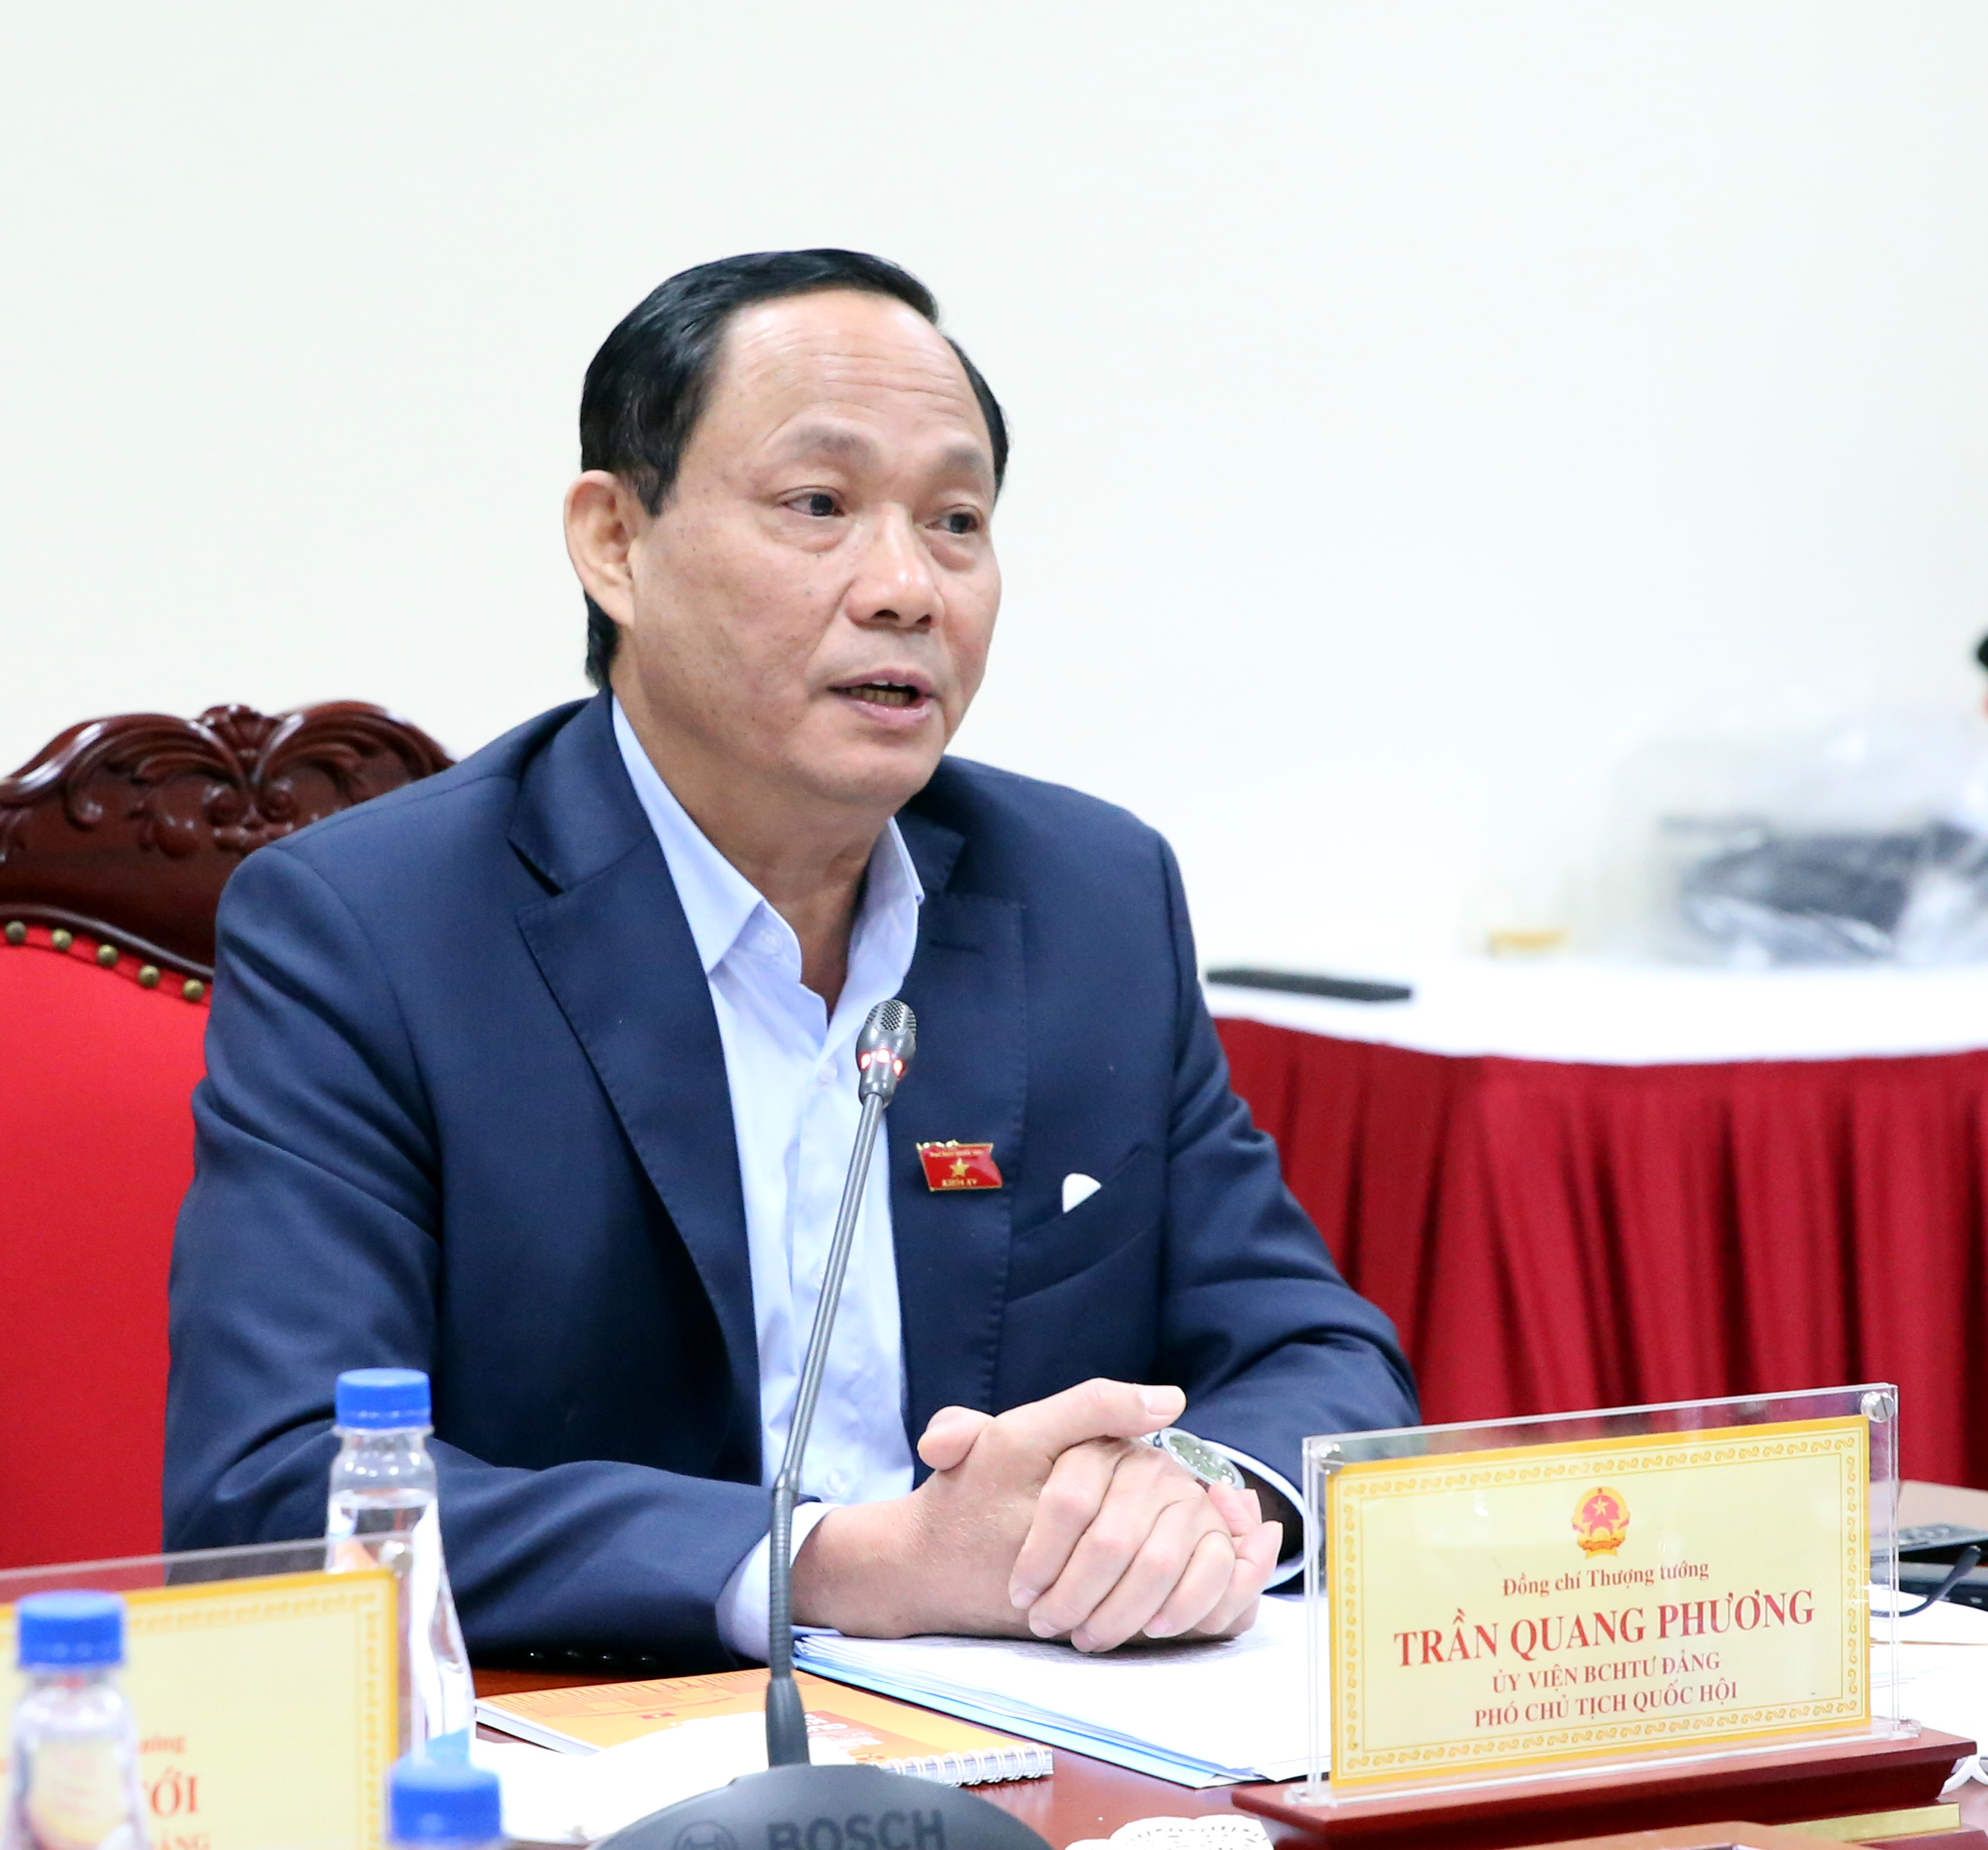 Phó Chủ tịch Quốc hội, Thượng tướng Trần Quang Phương phát biểu tại cuộc làm việc (1)